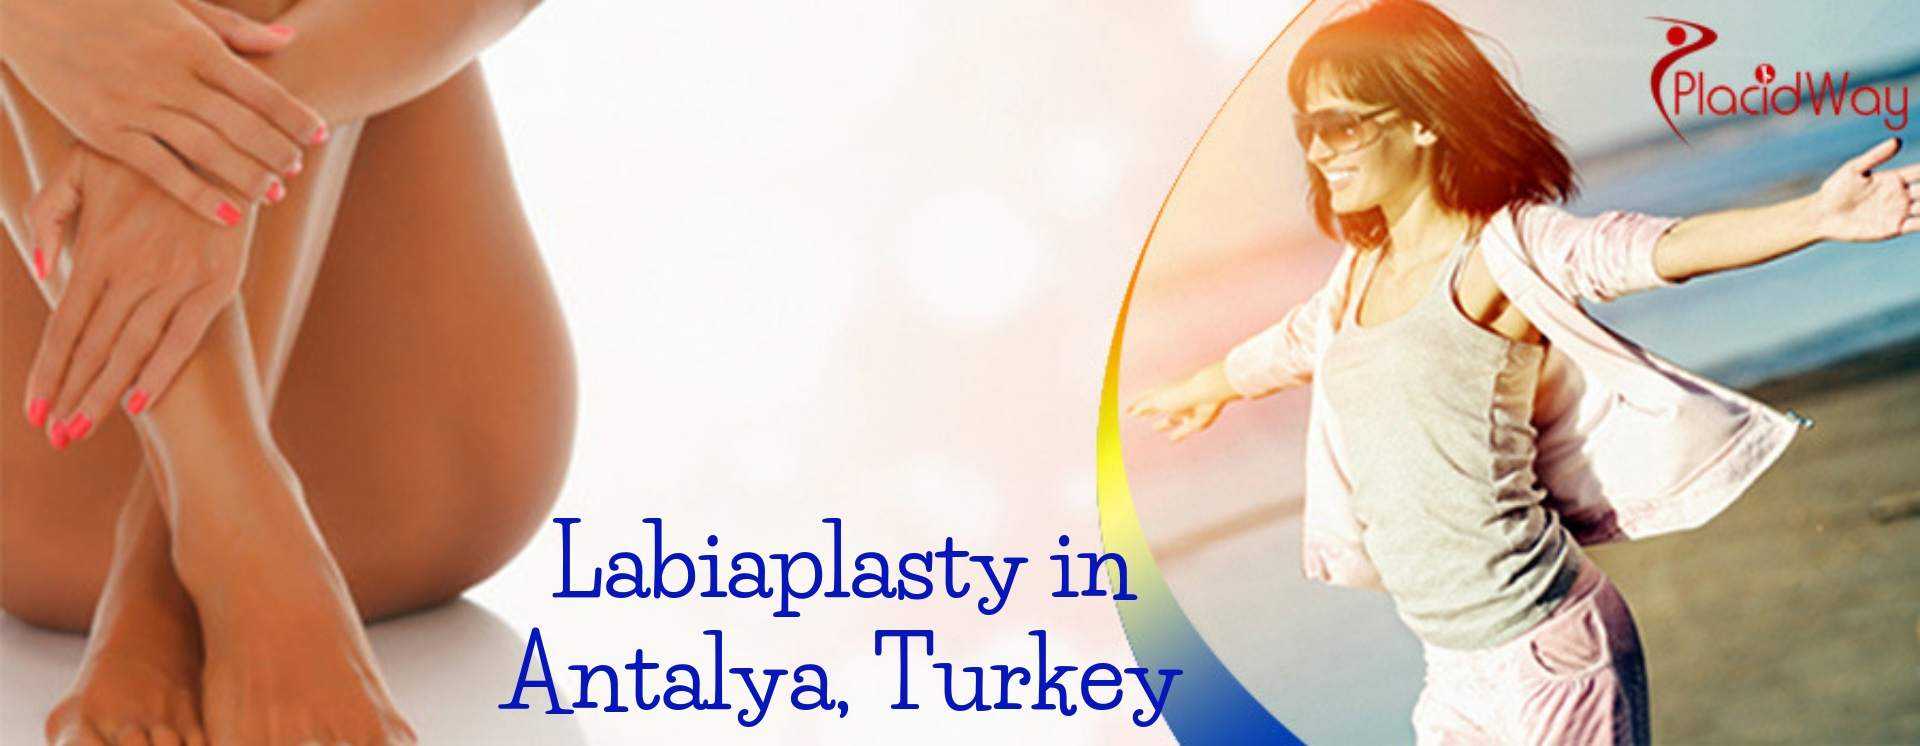 Labiaplasty in Antalya, Turkey